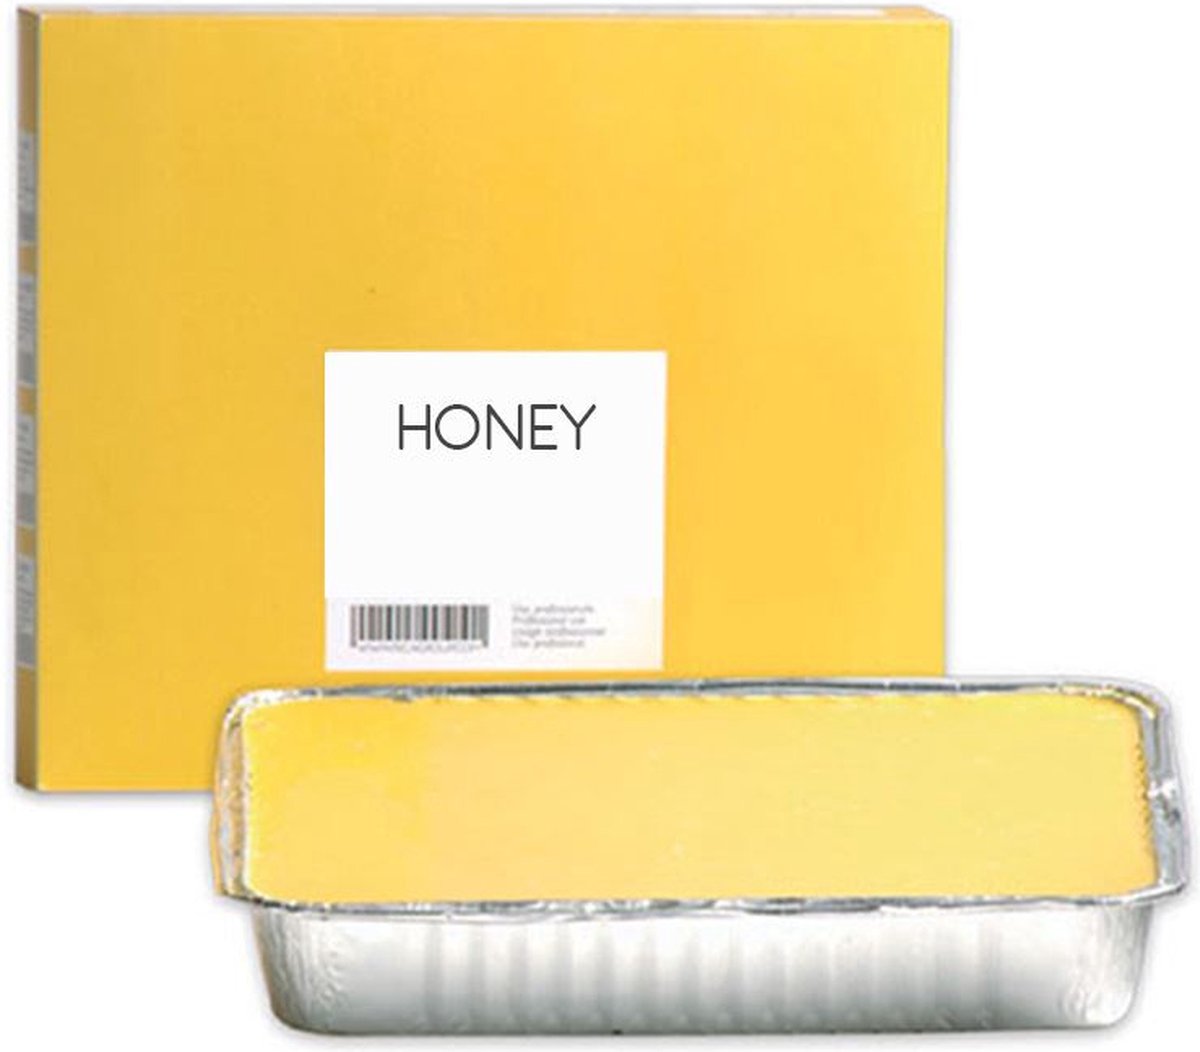 Blok Ontharingswas Honing 500g - Ontharingswax - Hot Wax - Ontharen van lichaam en gezicht - Brazilian hard wax - Wax ontharen